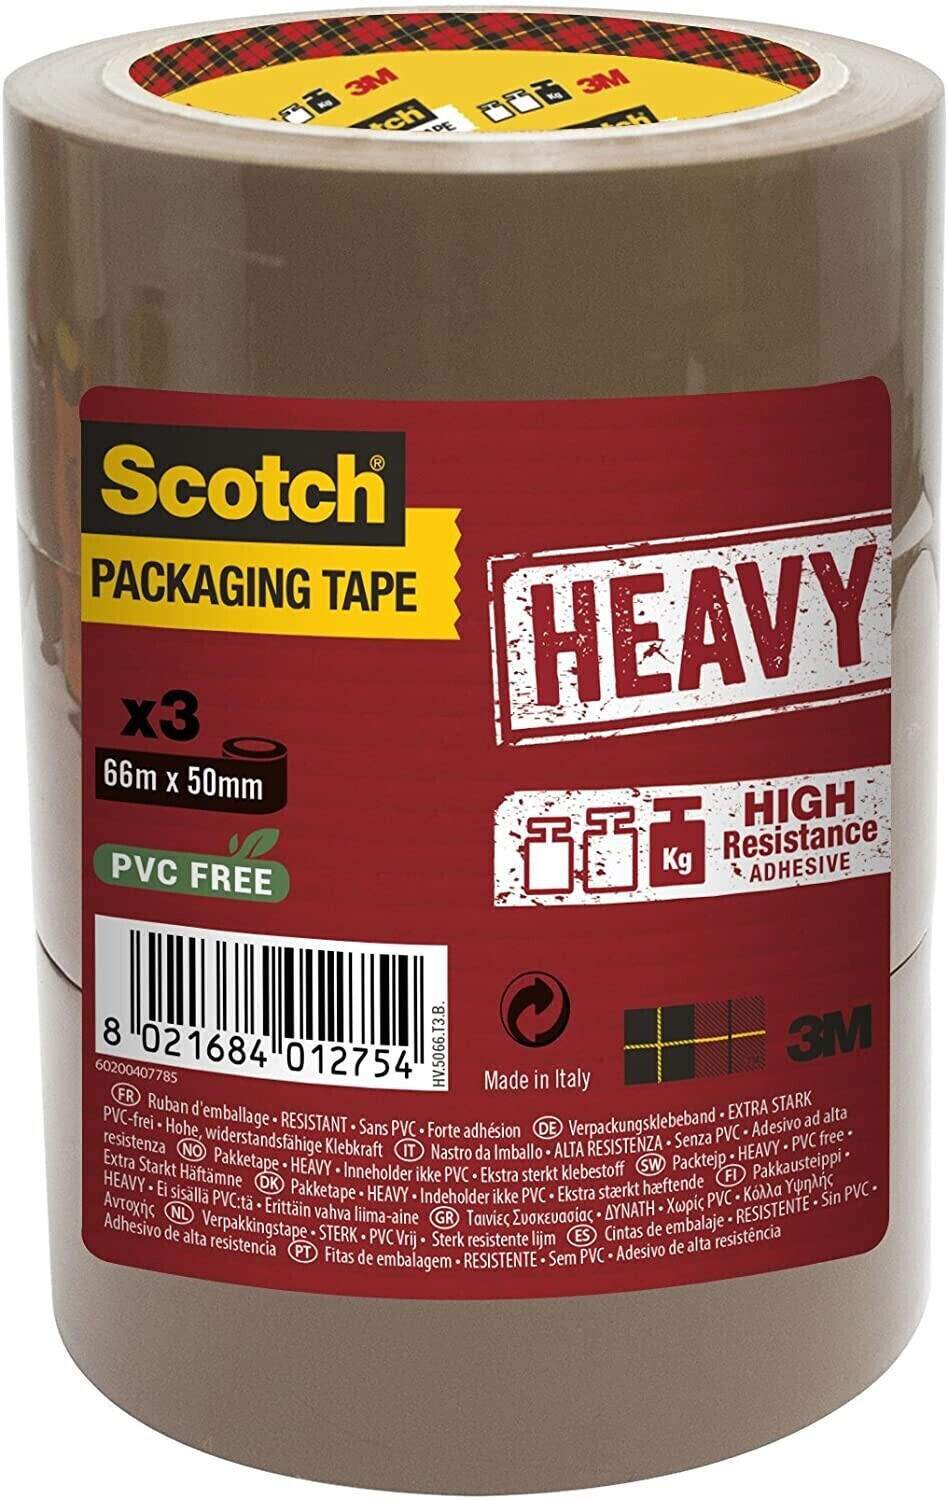 Scotch Heavy Duty Packaging Tape, 66m x 50mm, Brown, 3 Rolls